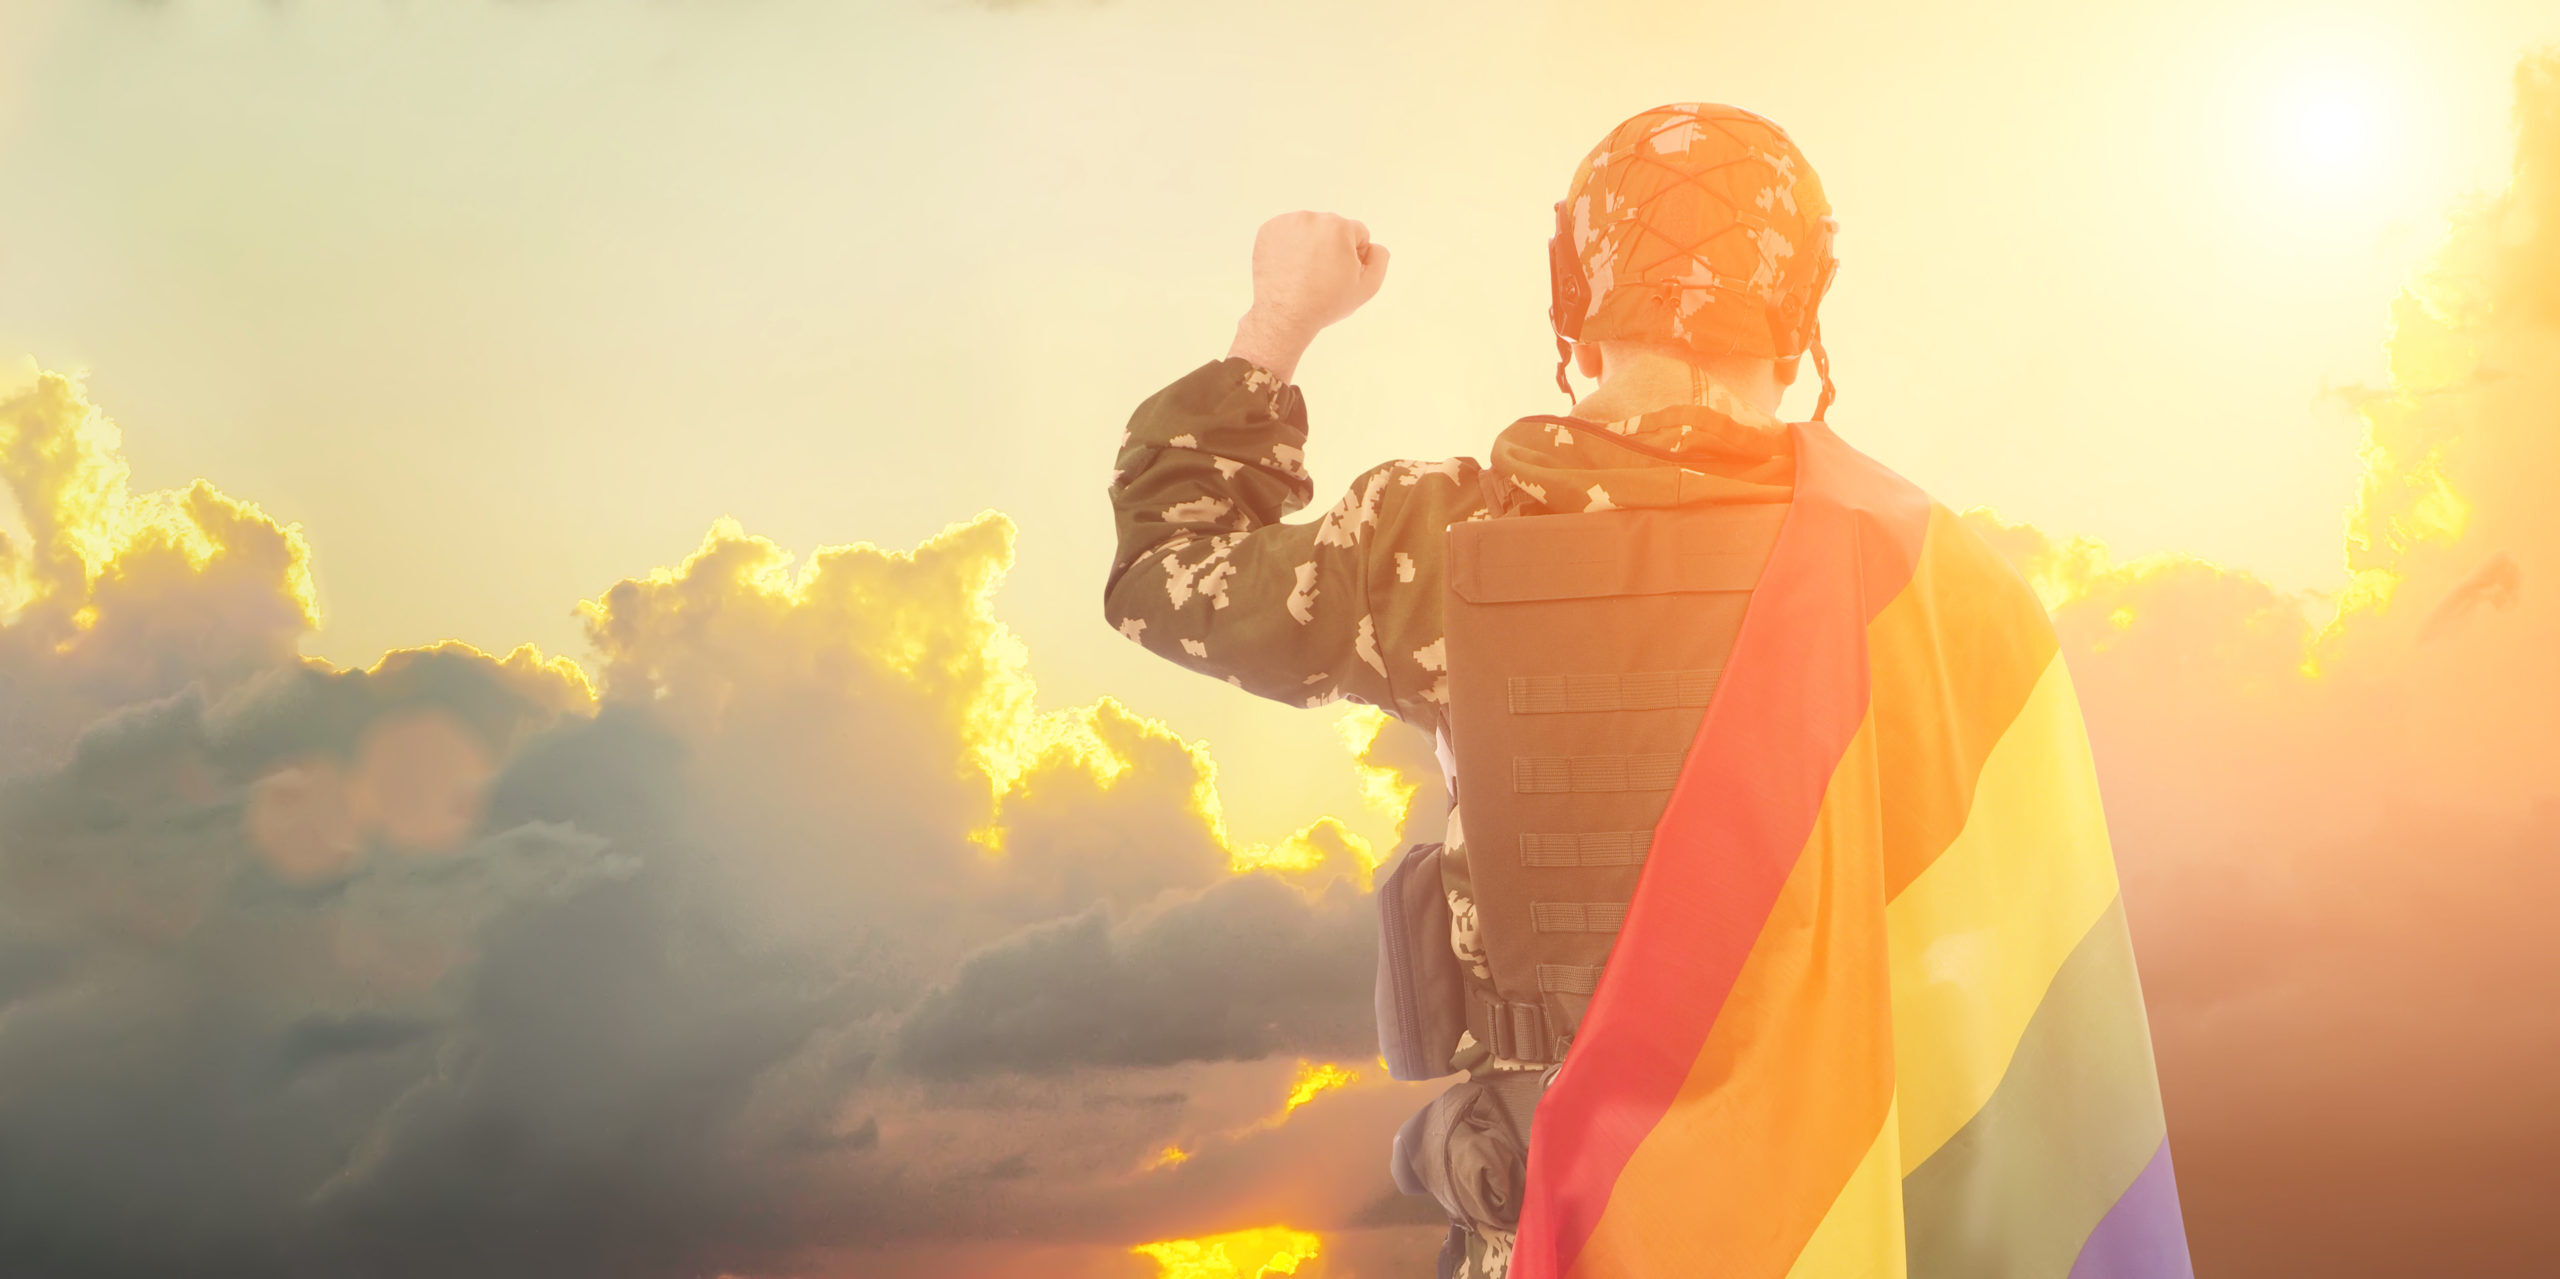 Member of military holding Pride flag under sunset